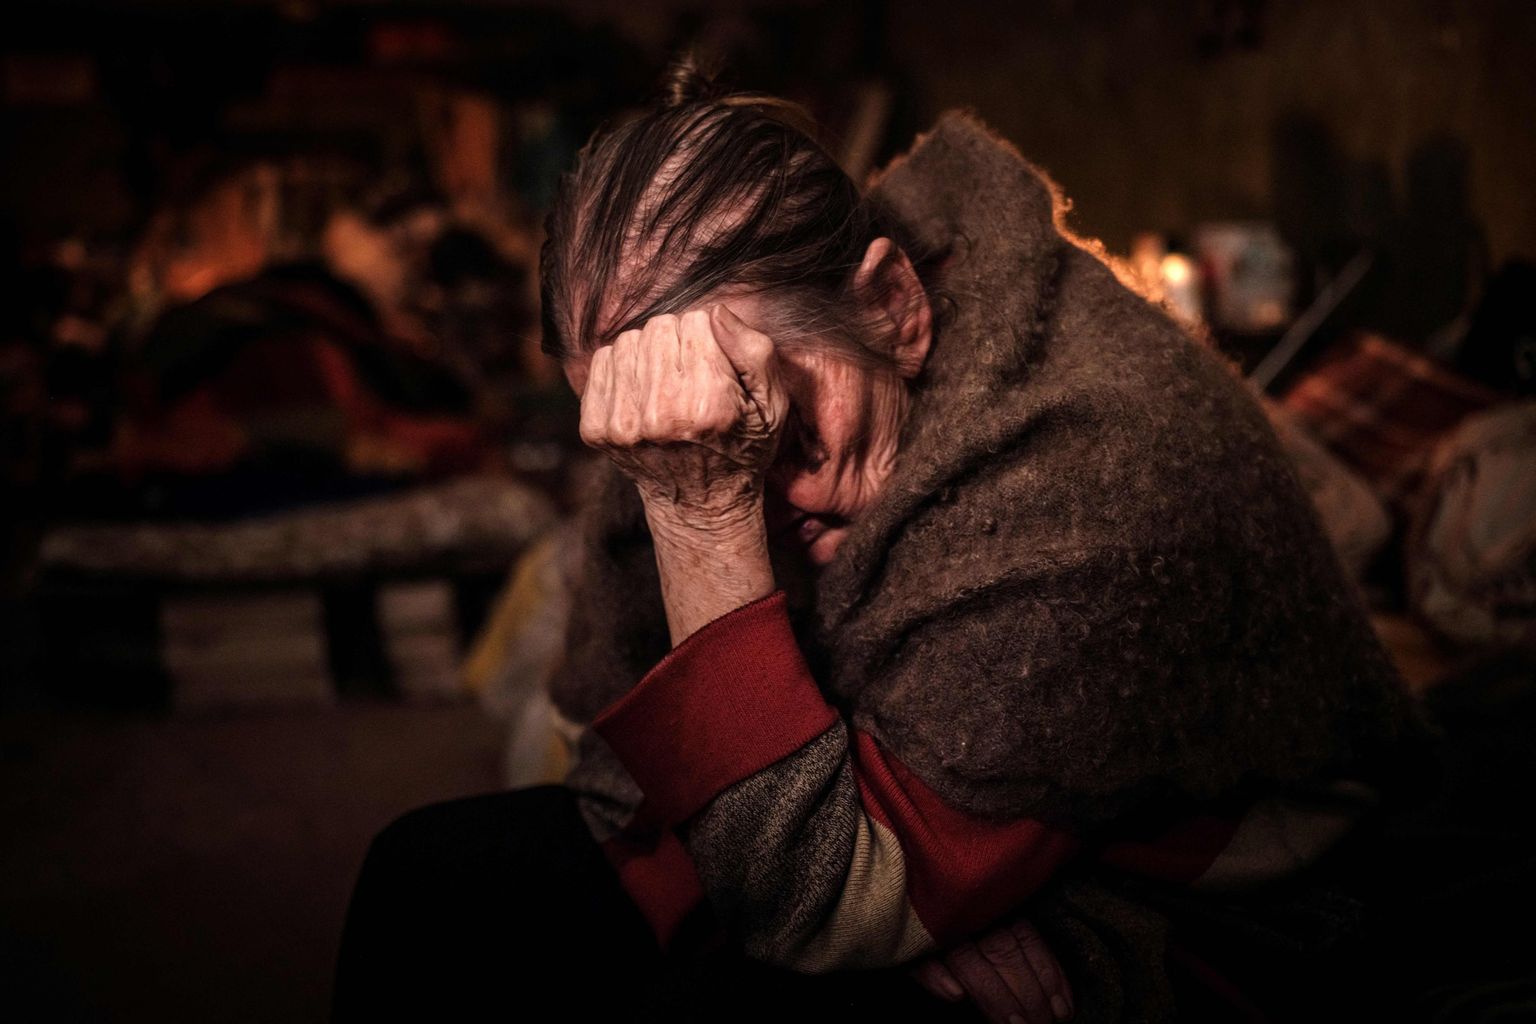 88-летняя Клавдия Пушнир укрывается в подвале квартиры во время продолжающихся минометных взрывов в Северодонецке, восточная Украина, 18 мая 2022 года, на 84-й день российского вторжения в Украину. Пушнир пришла строить город, когда ей было 17 лет, и думает, что умрет в убежище разрушенного города.